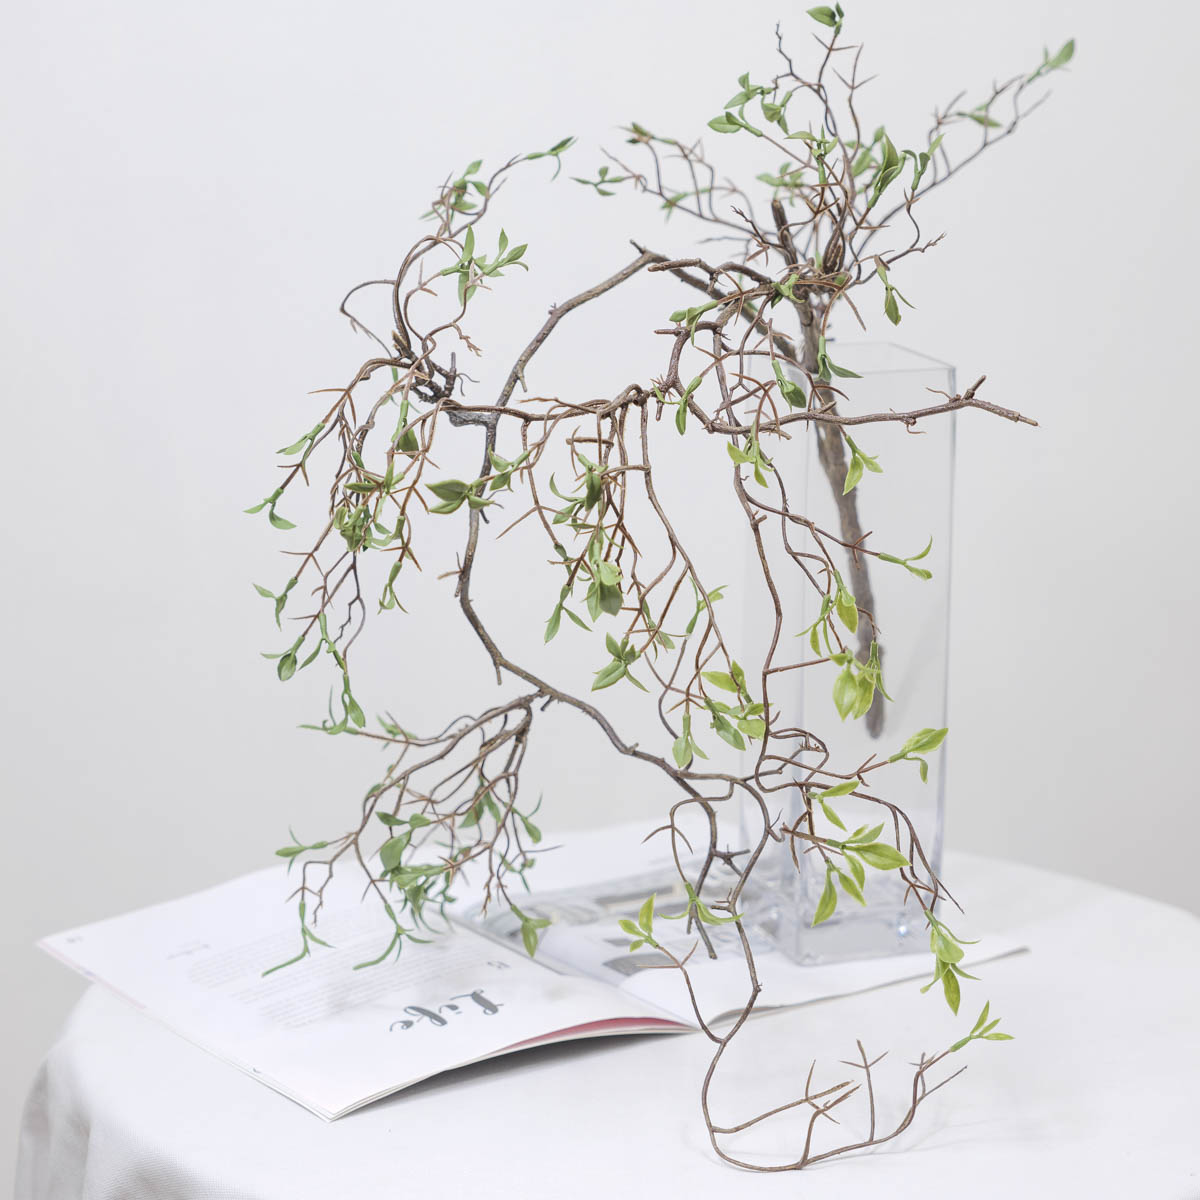 조화식물 버드나무 새순잎 바인 1개 화병에 꽂아놓은 사진